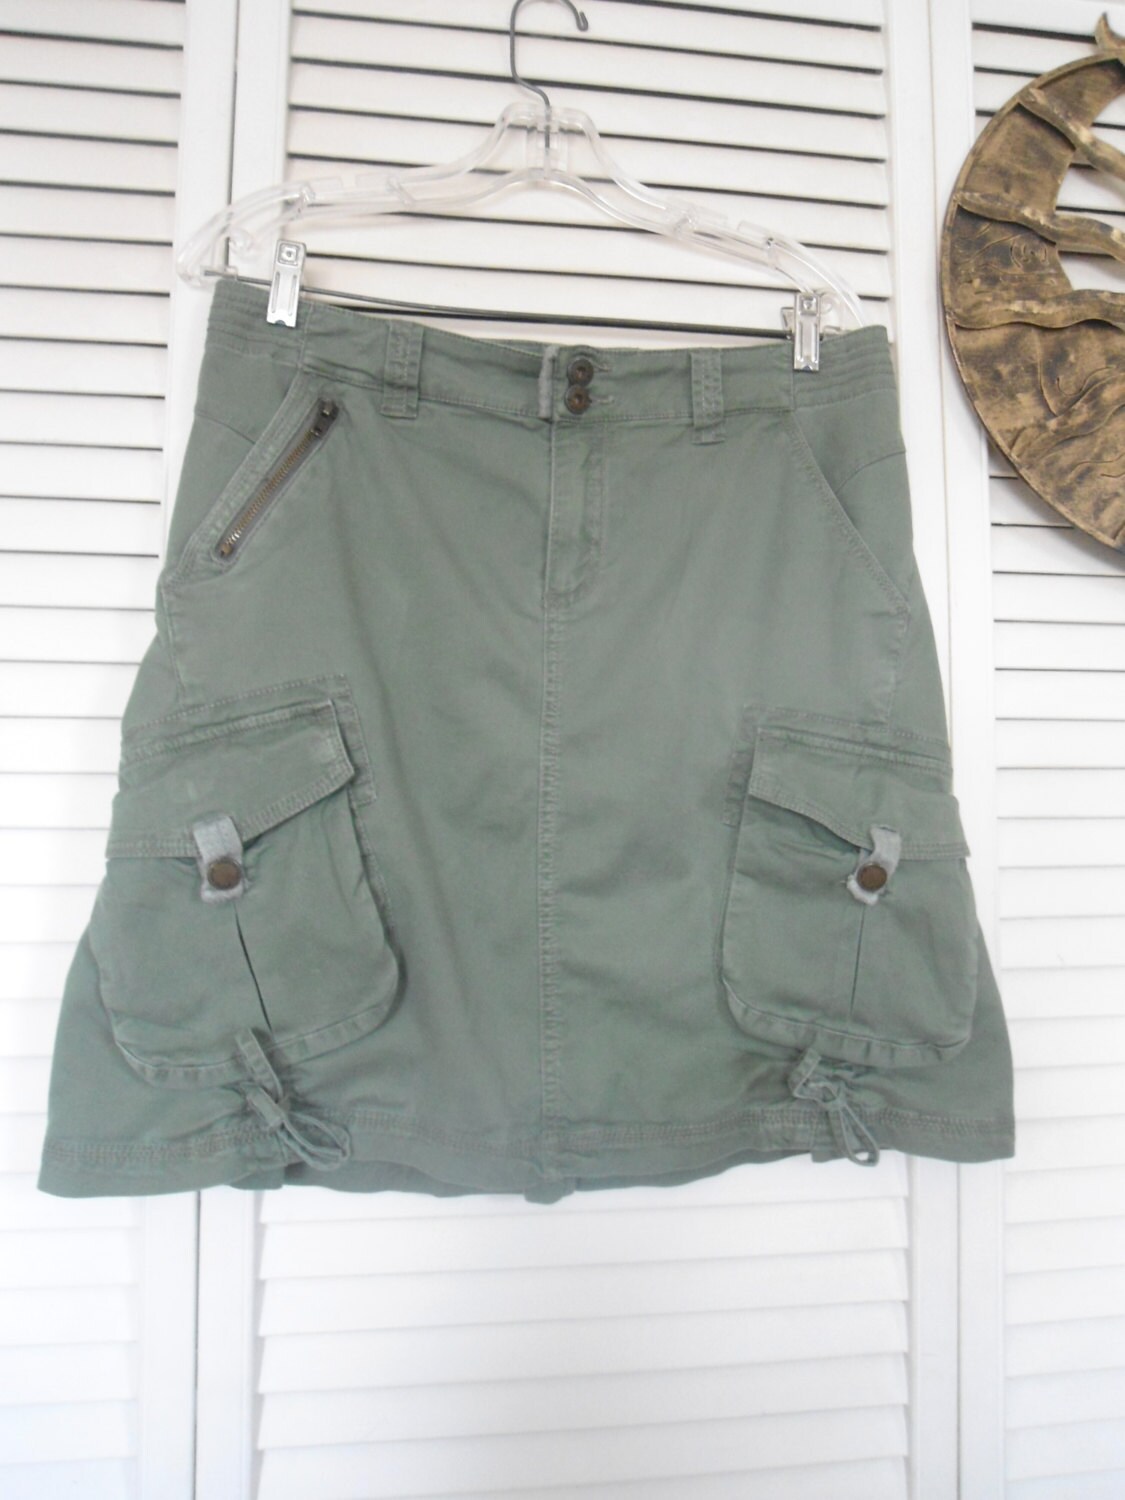 Green Khaki Skirt Pleated Skirt Cargo Skirt Size 9 Skirt